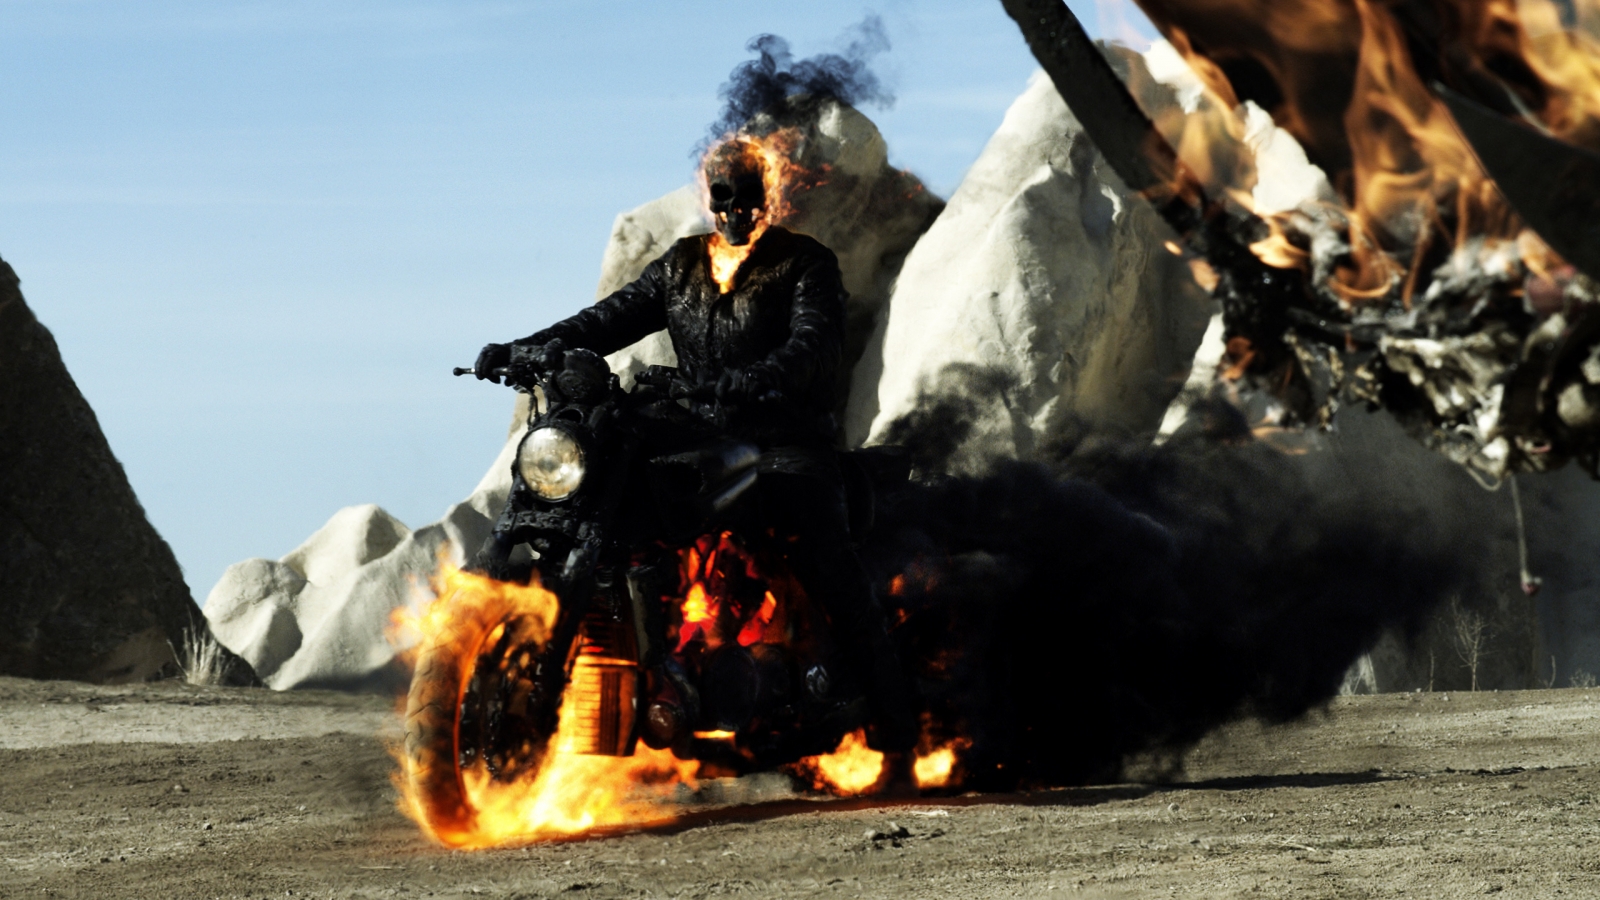 Ghost Rider Spirit of Vengeance 2012 for 1600 x 900 HDTV resolution